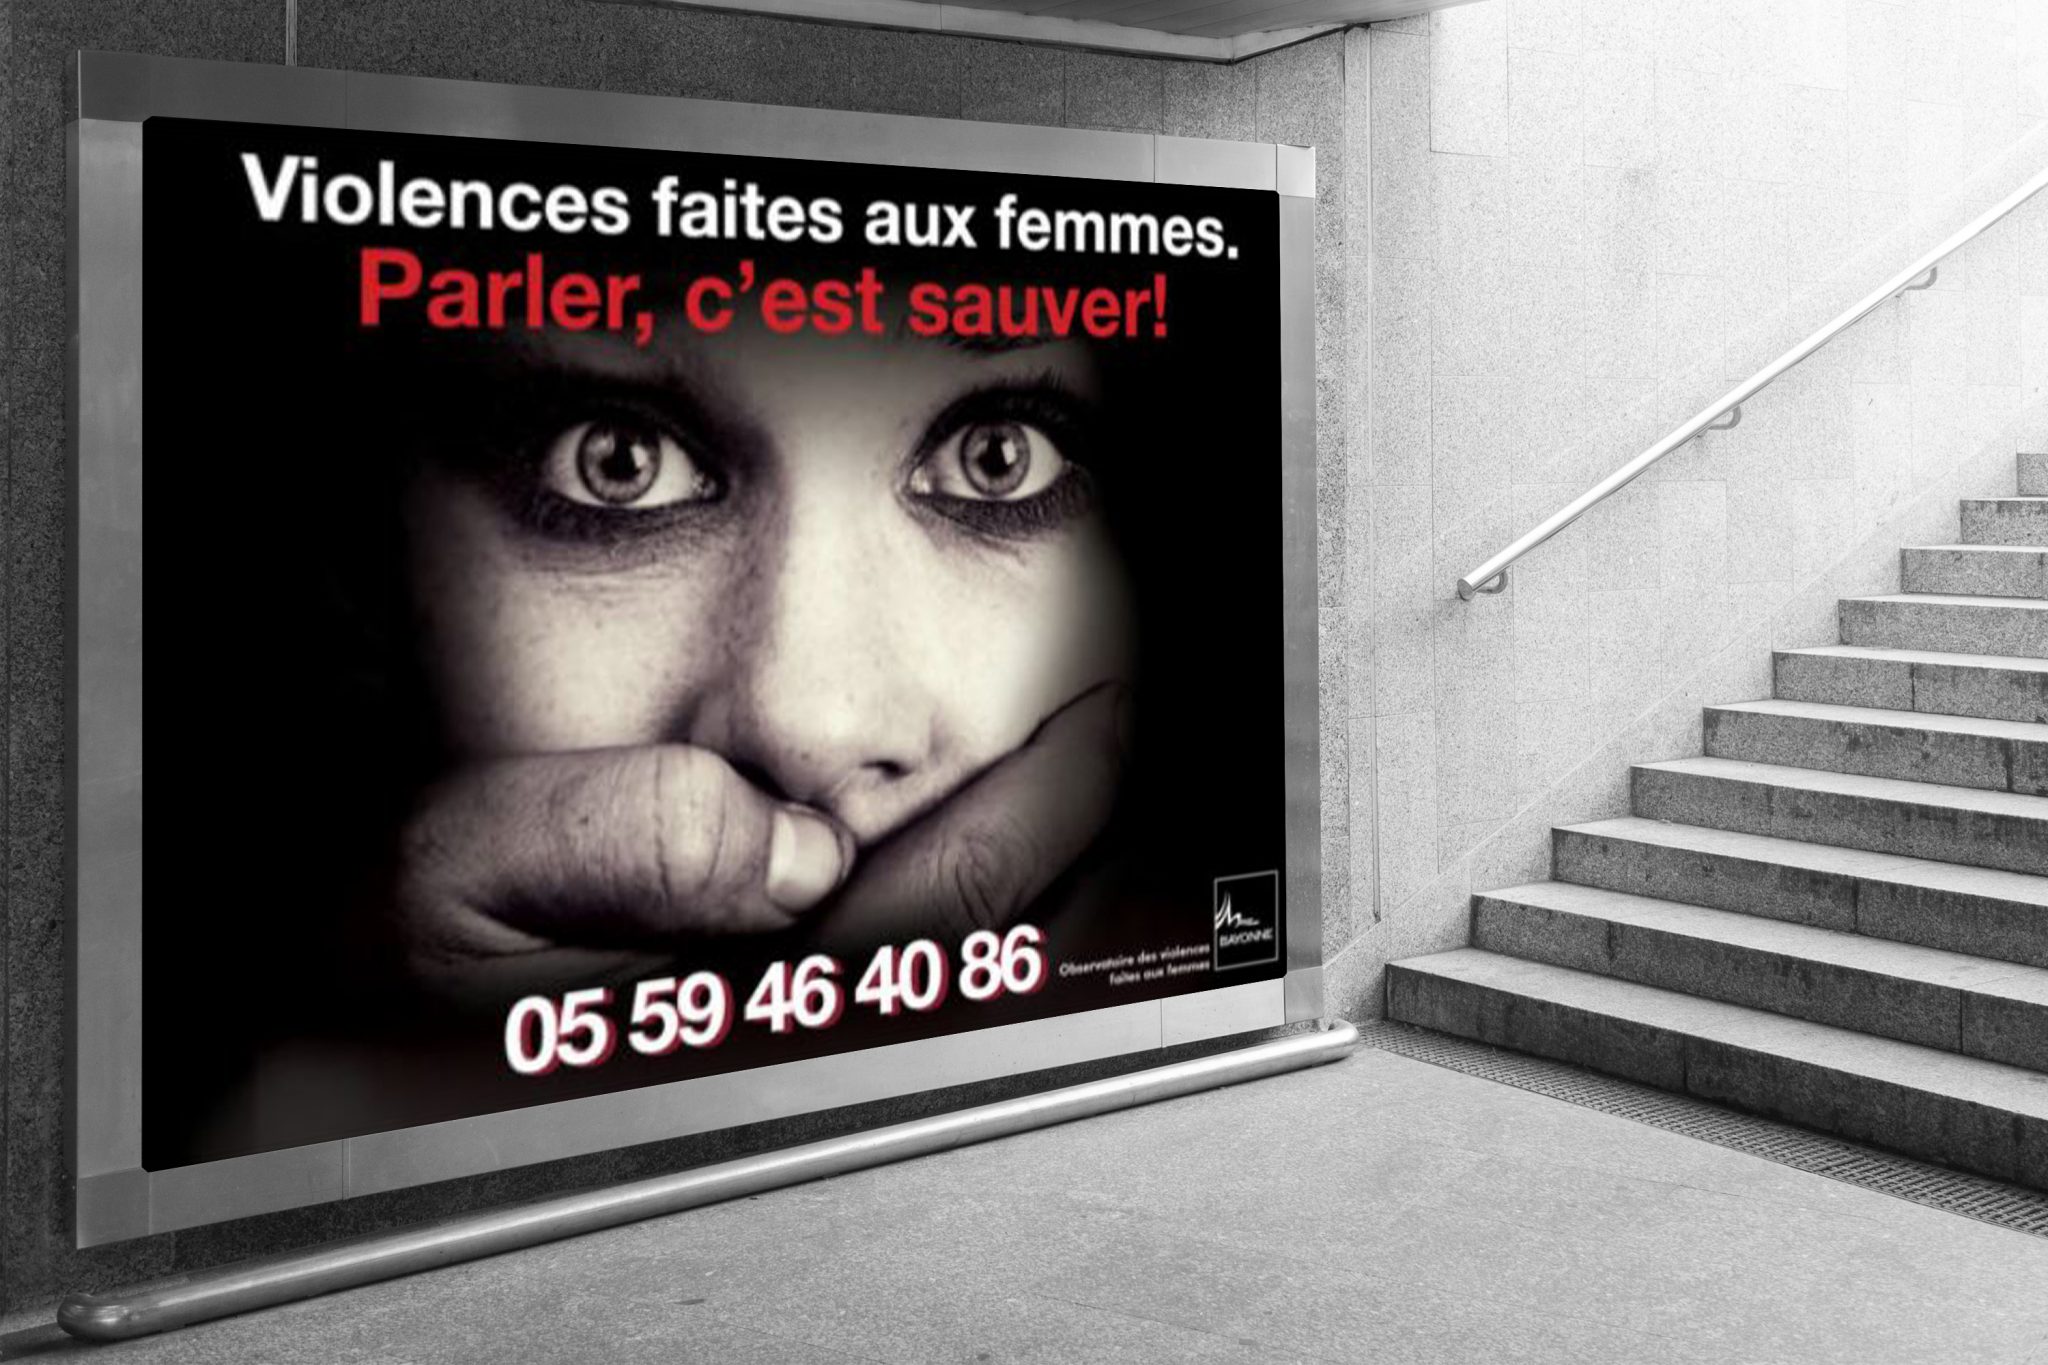 publicite violence femmes